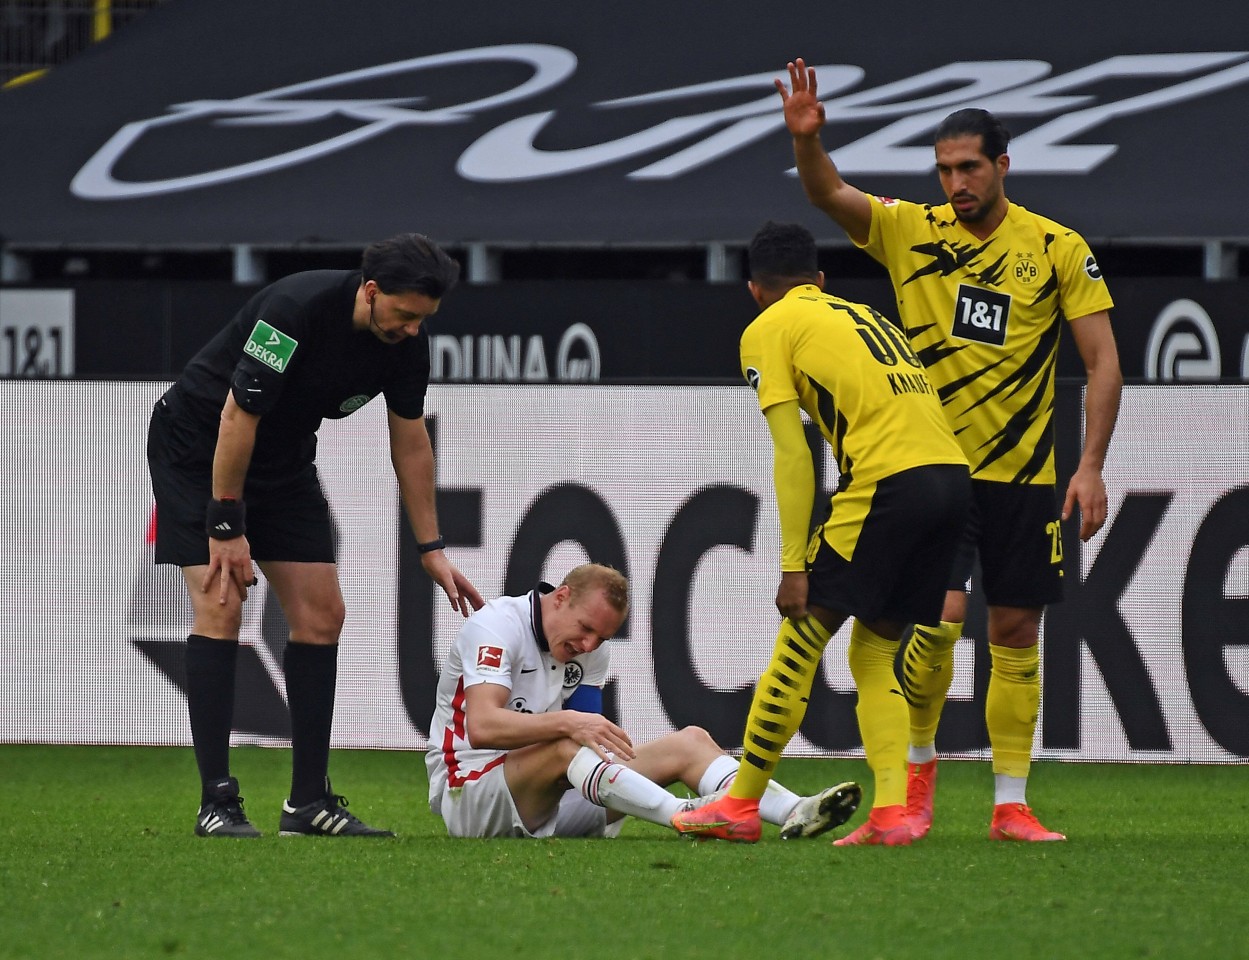 Nach seiner Zeit bei Borussia Dortmund wurde Sebastian Rode mehr denn je von Knieproblemen gequält.